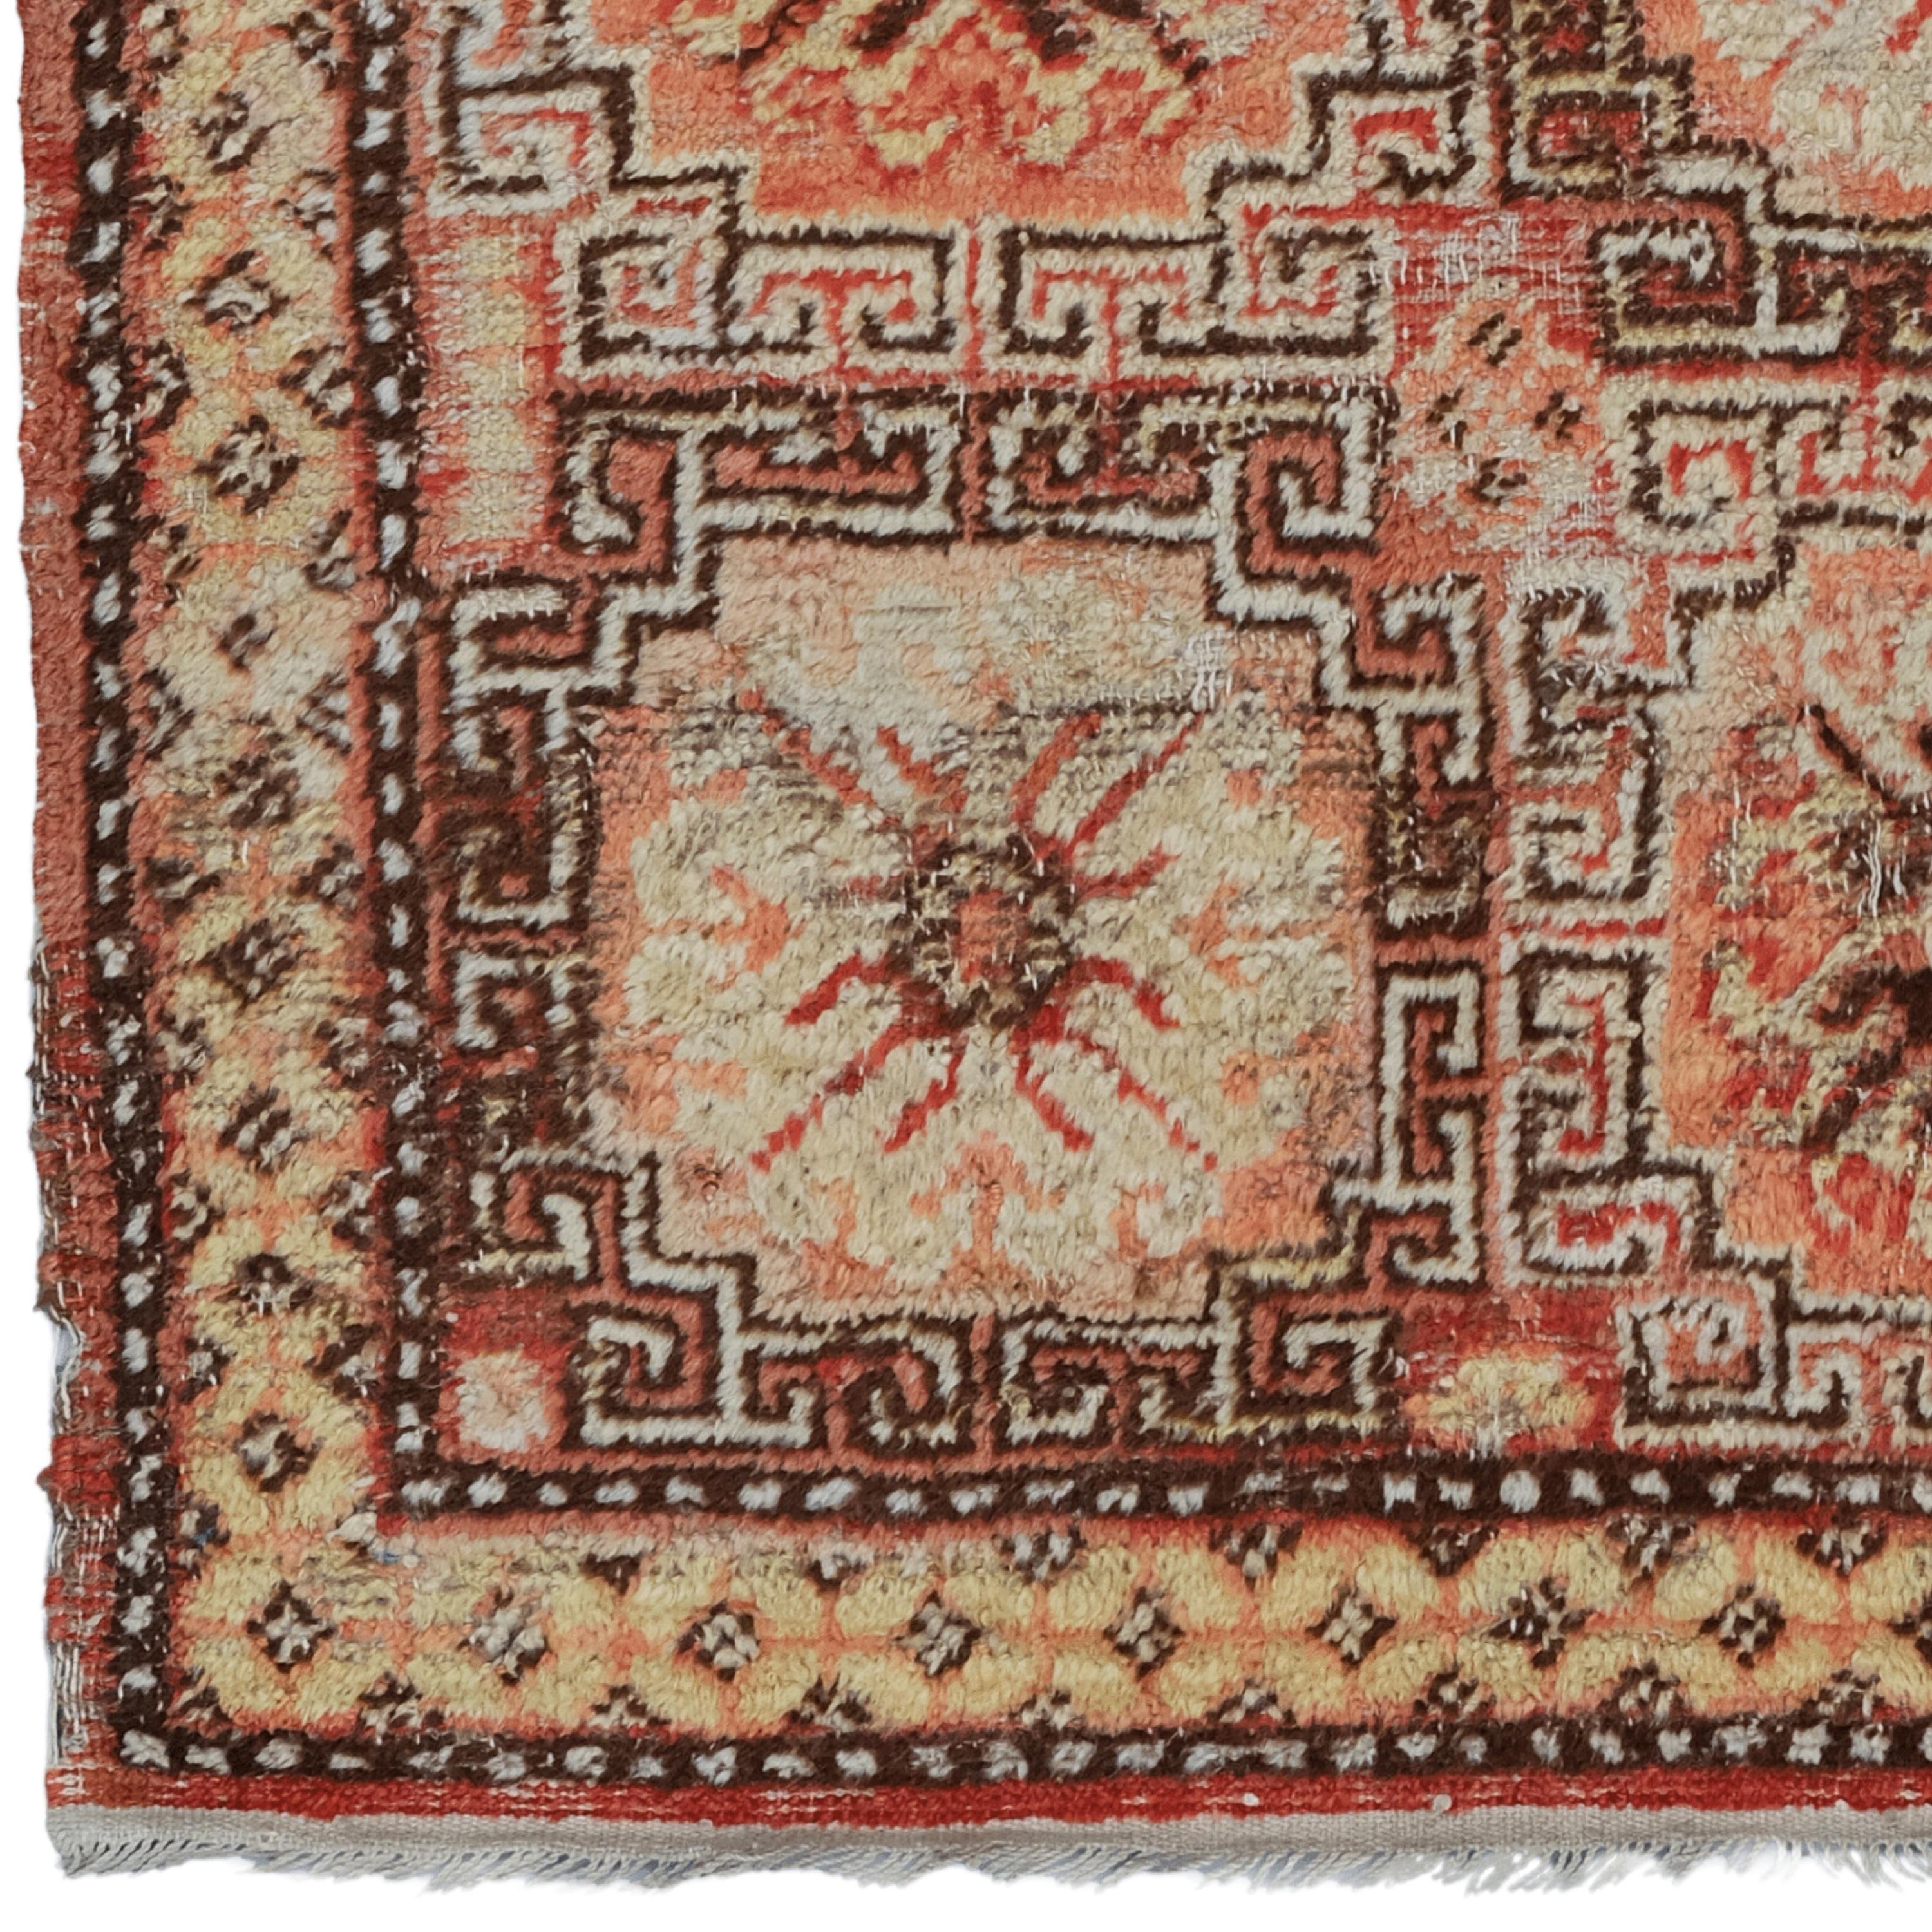 Khotan-Teppich aus dem 19. Jahrhundert - Handgewebter türkischer Teppich

Dieser elegante Khotan-Teppich aus dem 19. Jahrhundert verleiht jedem Raum mit seiner historischen Textur und seinem raffinierten Design eine edle Note. Dieses handgefertigte